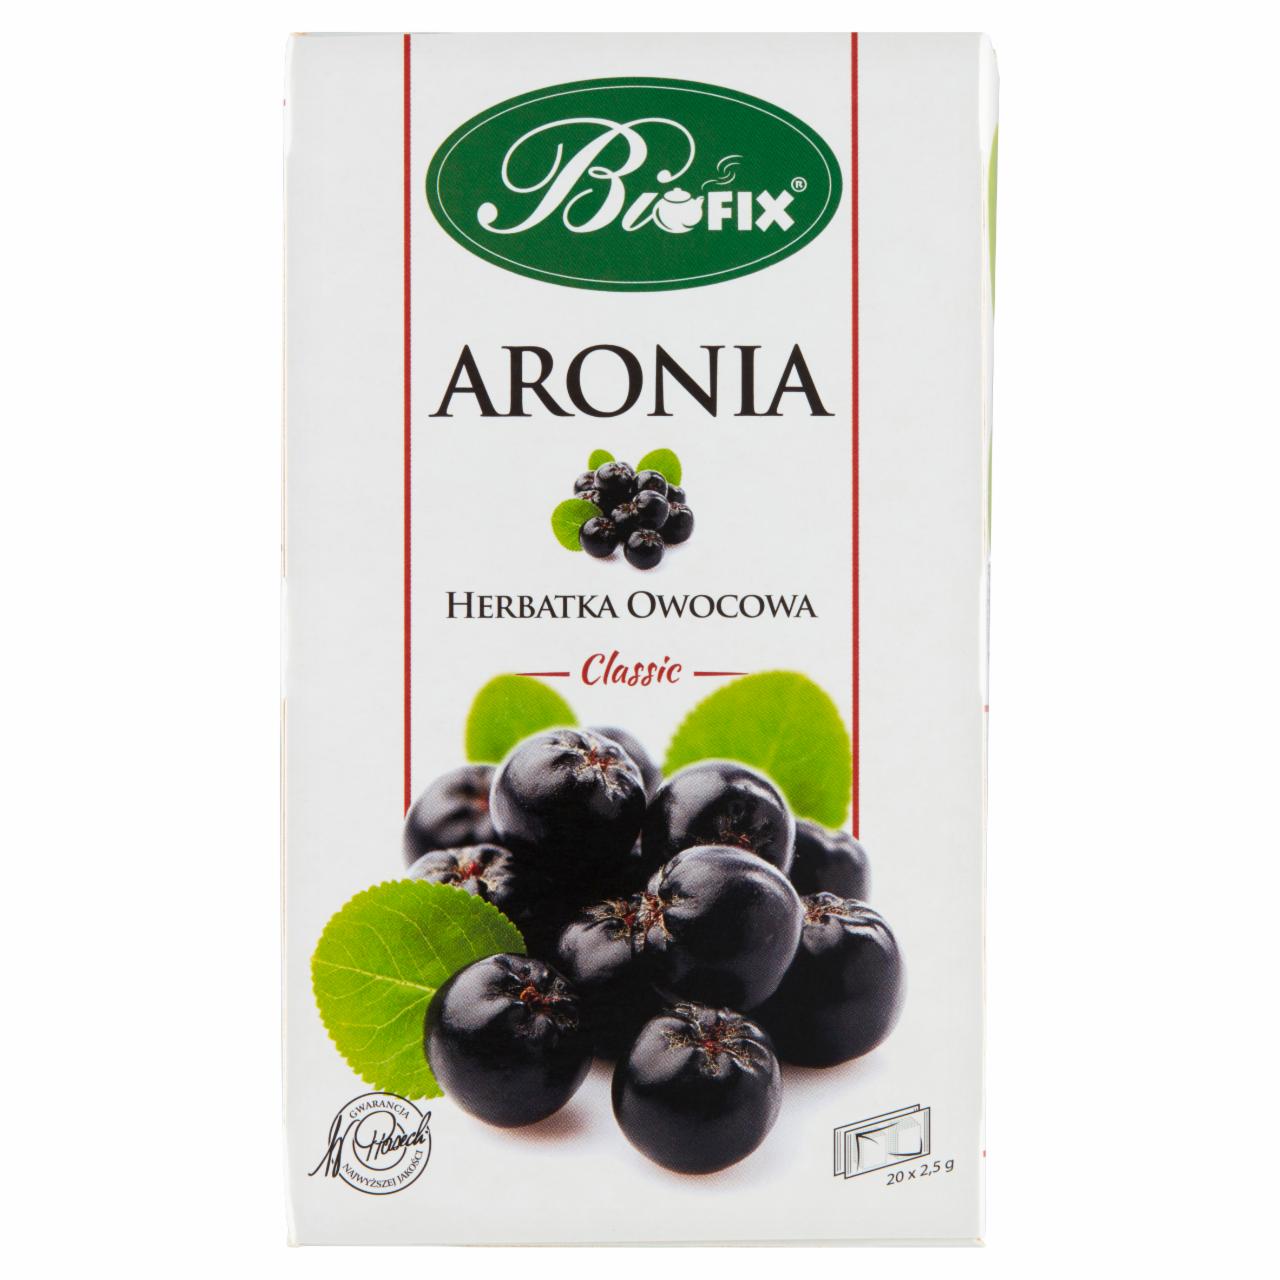 Zdjęcia - Bifix Classic Herbatka owocowa aronia 50 g (20 x 2,5 g)